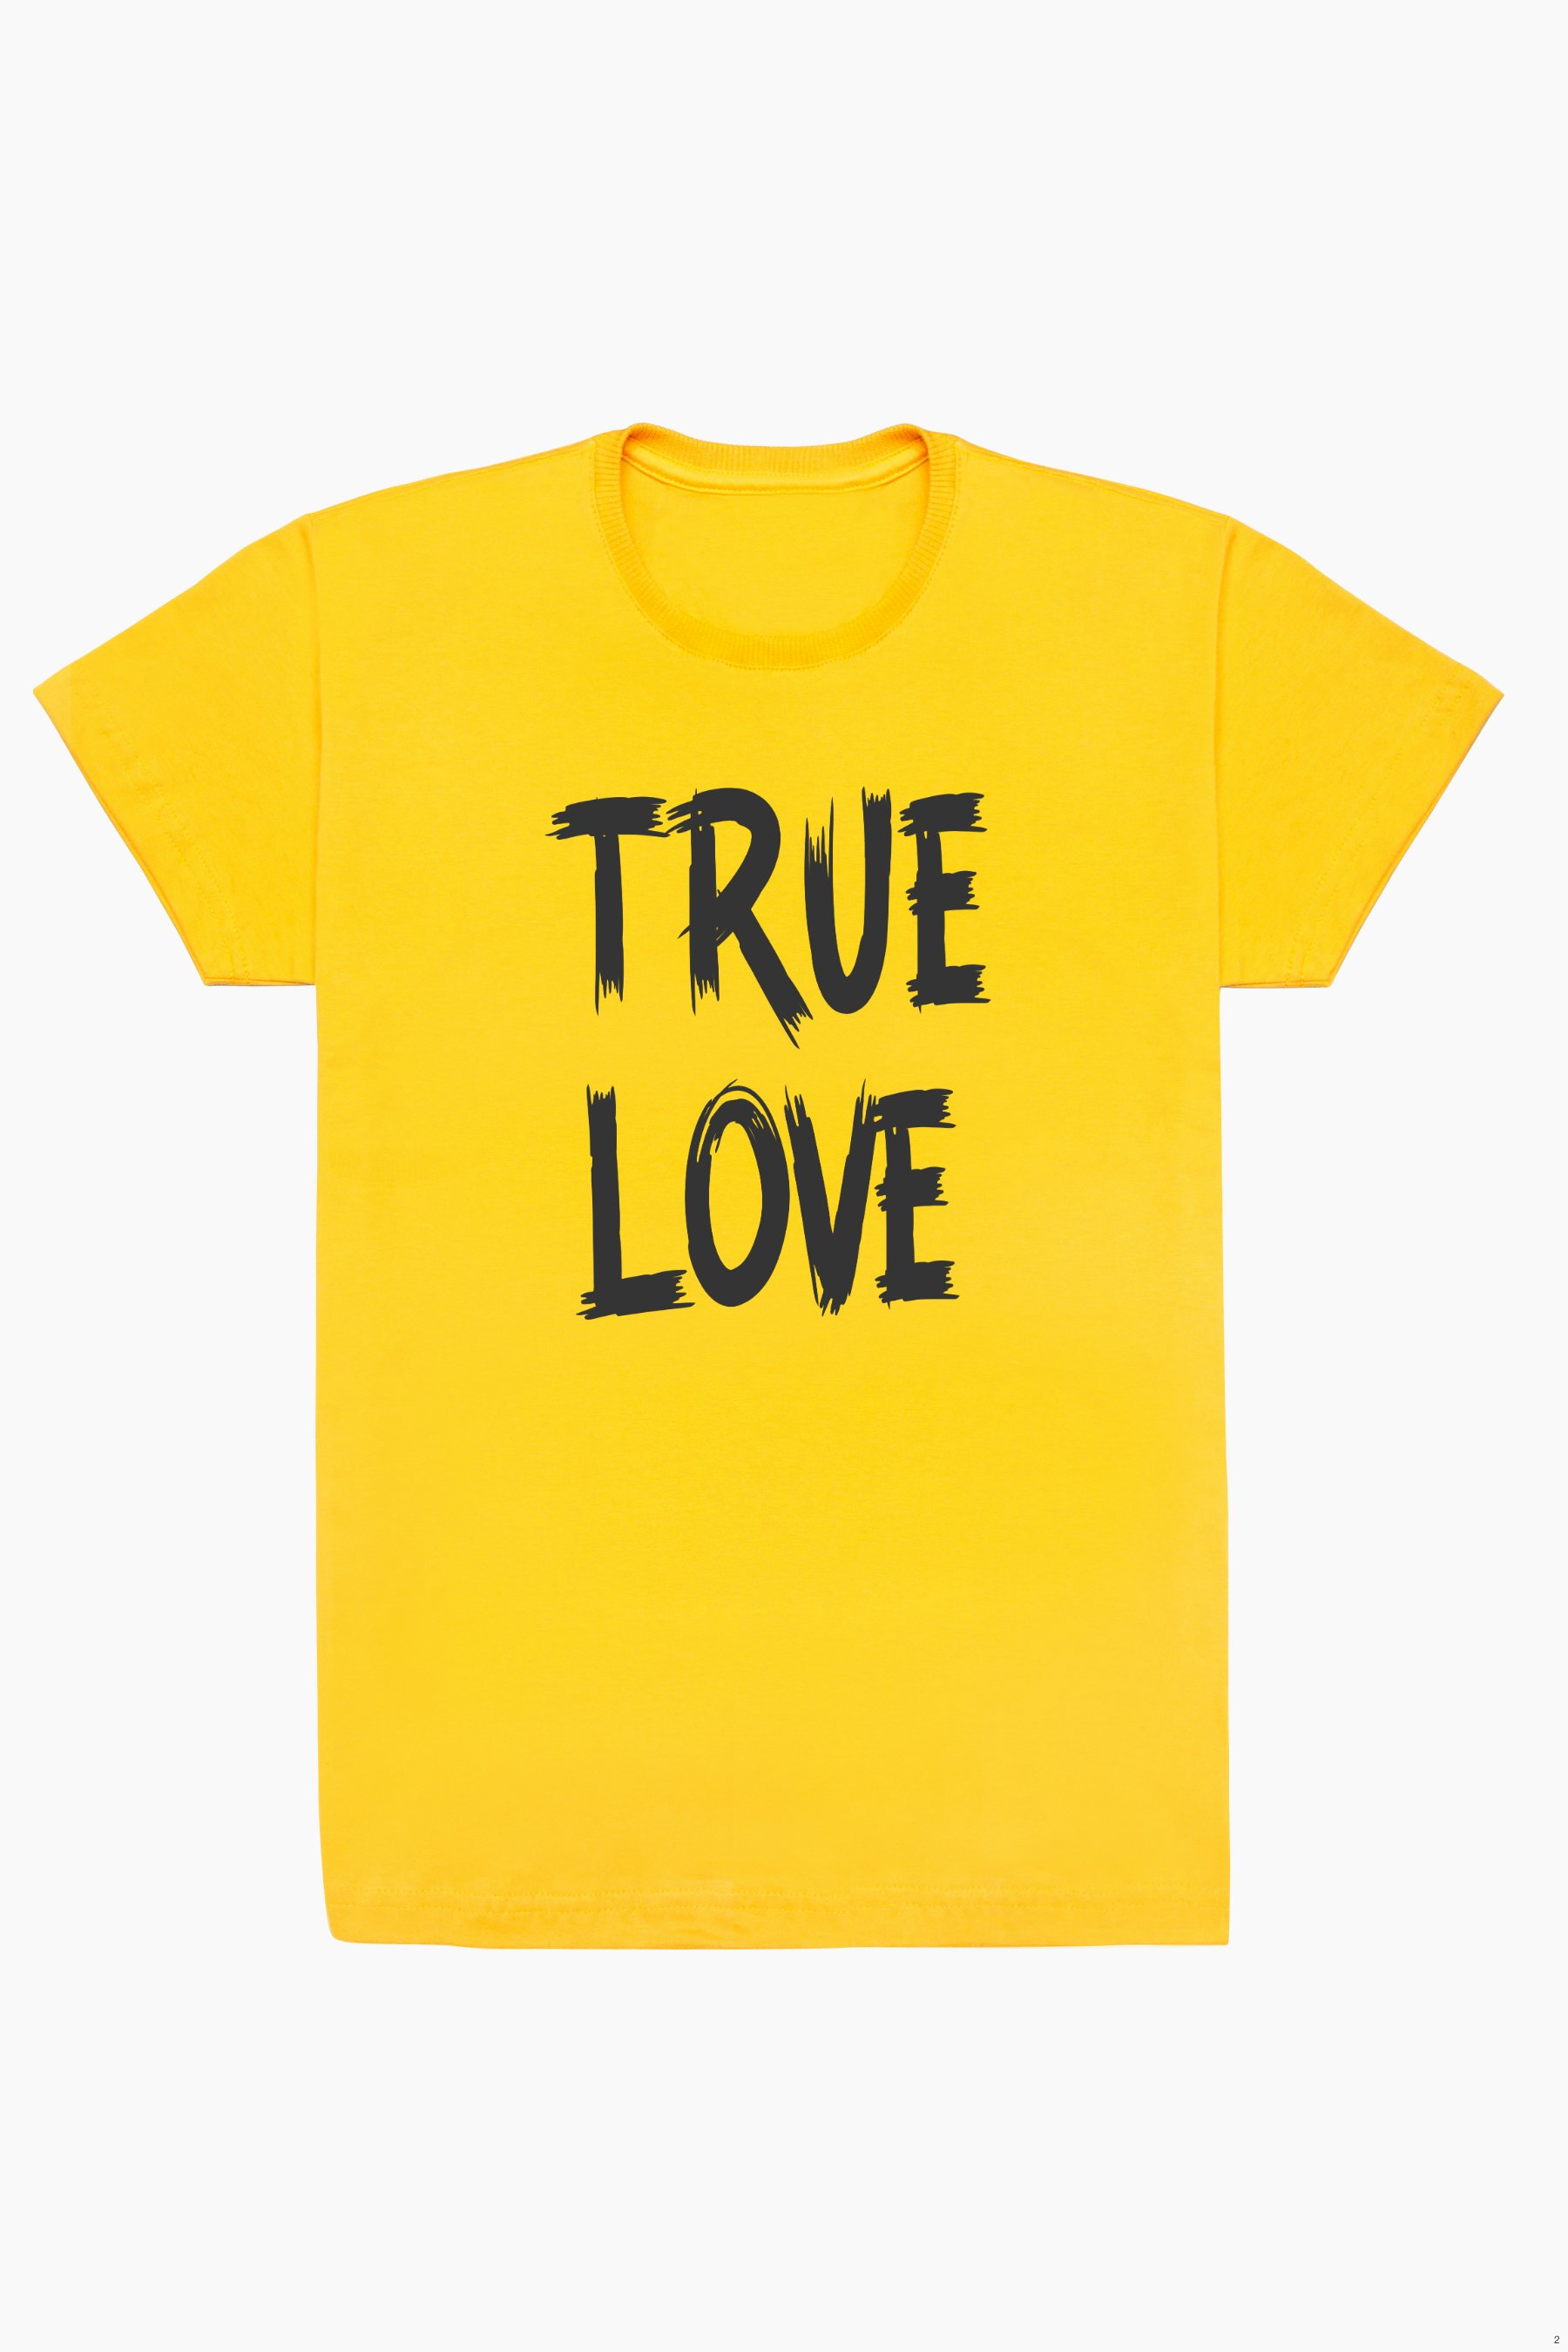 Camiseta Camiseta T-shirt frase TRUE LOVE - MAGUIVERSTORE